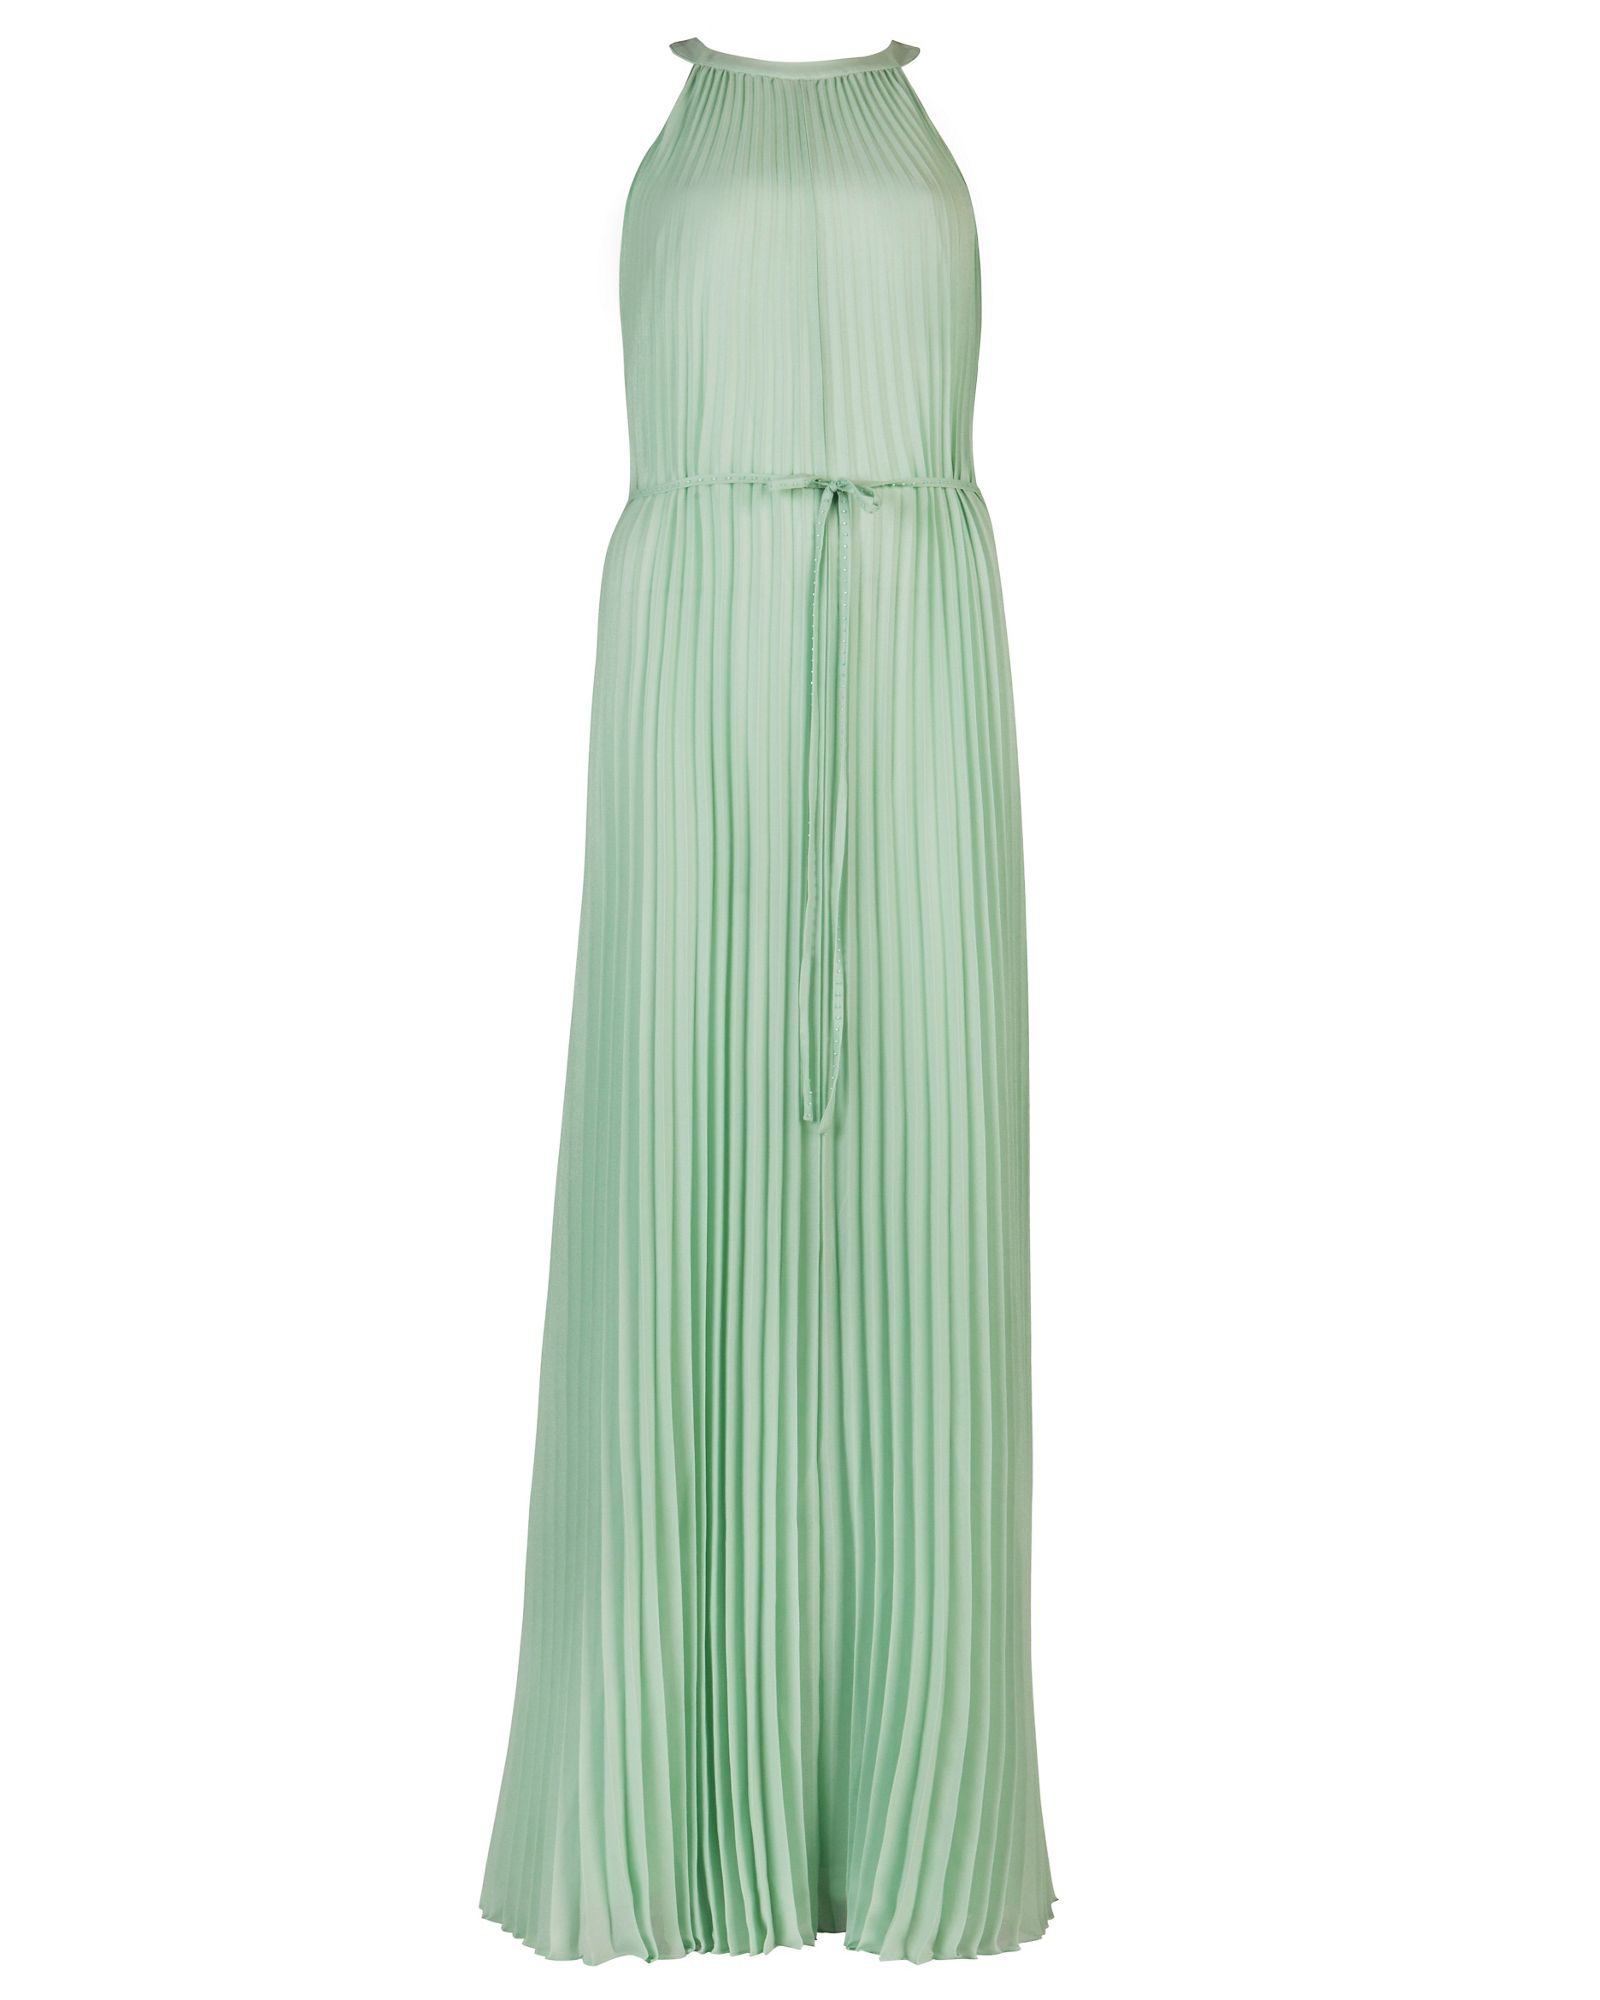 Ted Baker Kaddi Pleated Maxi Dress in Green (Mint) | Lyst